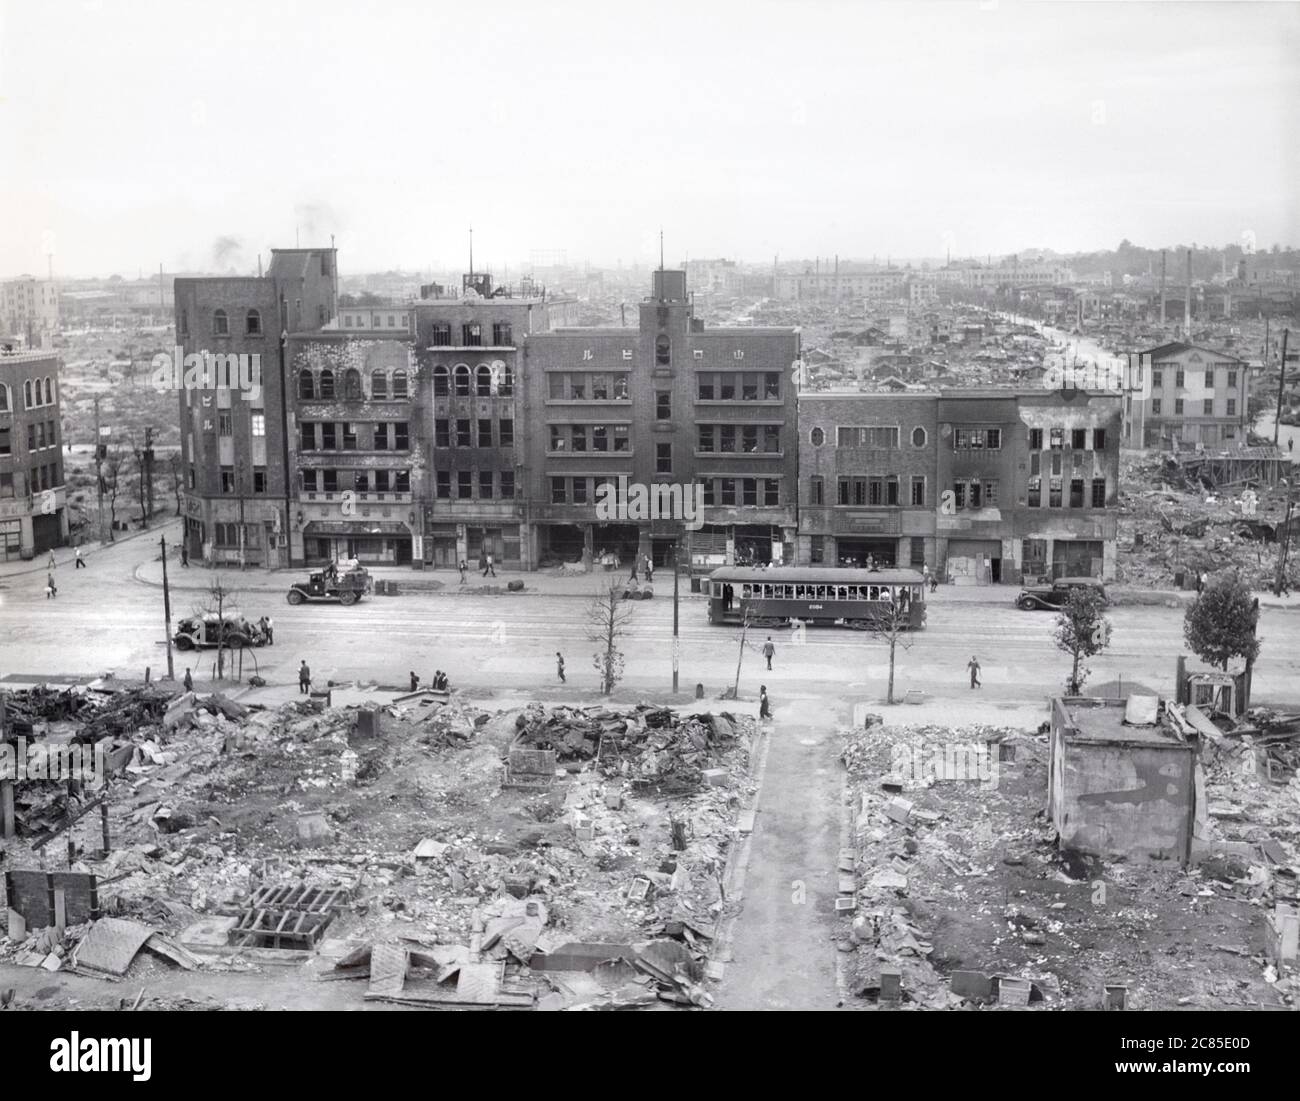 Bombardierte Gegend in der Nähe des Kaiserpalastes, Tokio, Japan, Korrespondent von ACME war Pool, September 1945 Stockfoto